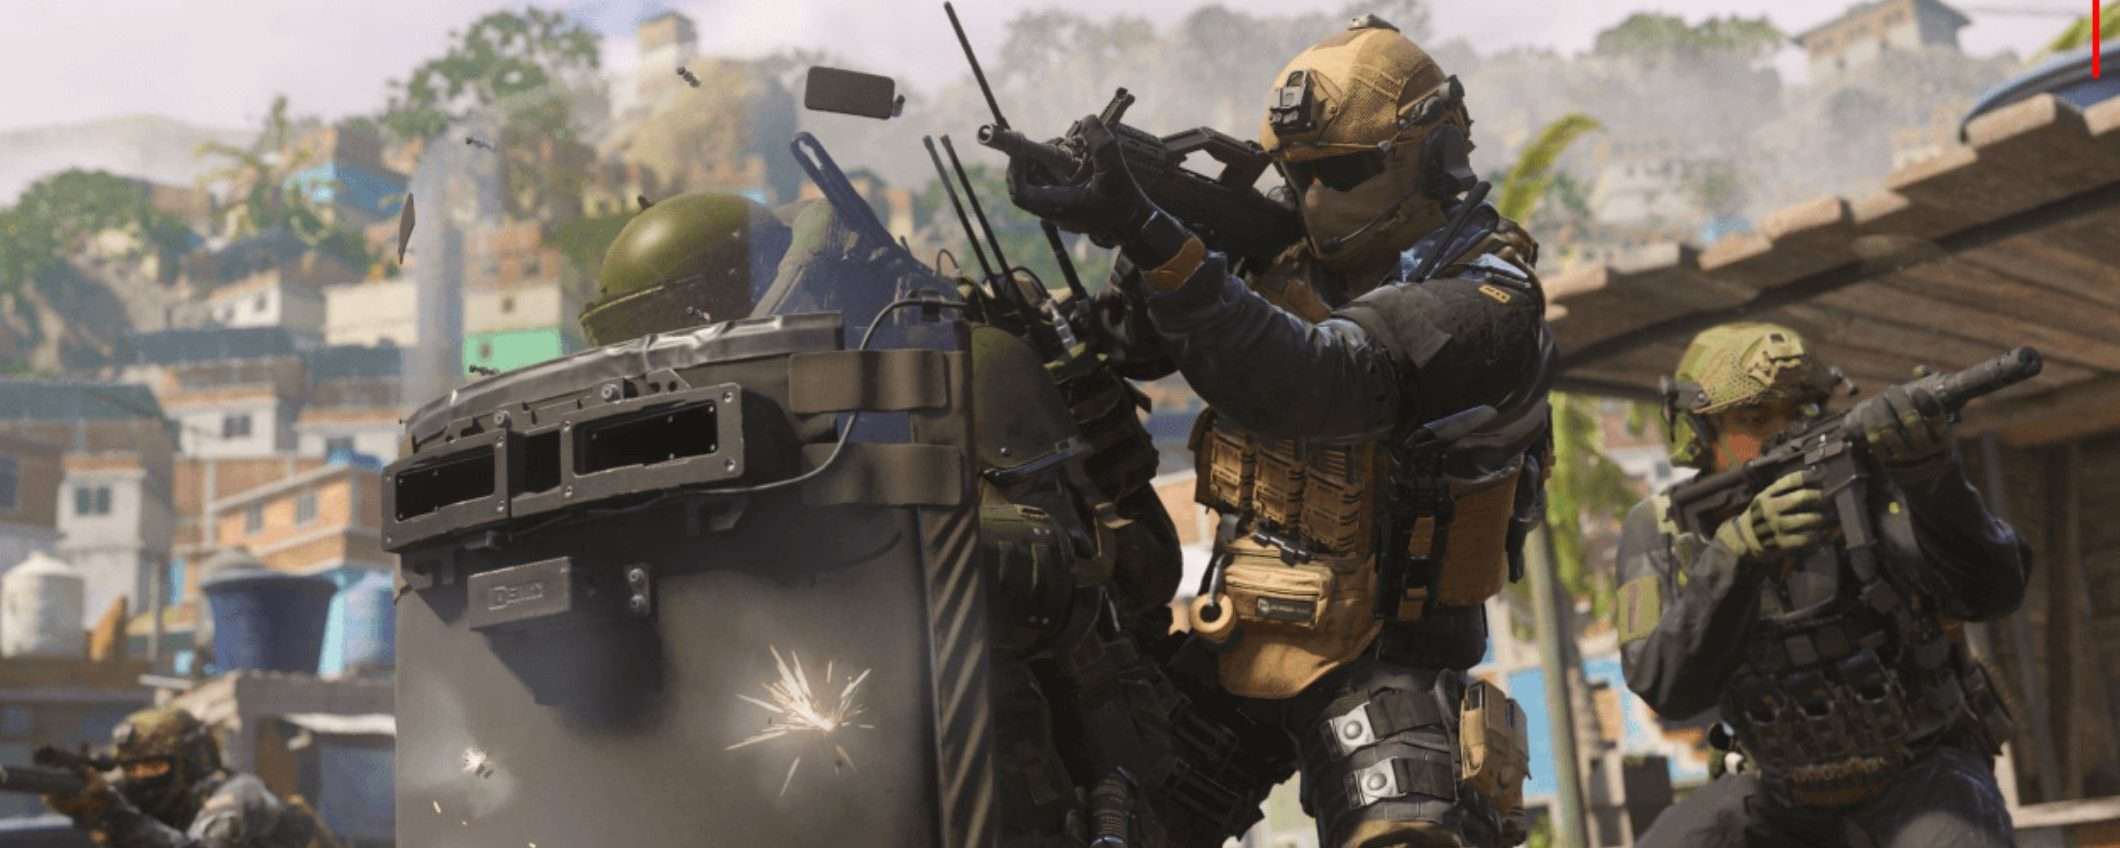 Offerte di Natale Kinguin: COD Modern Warfare 3 è in sconto fino al 31%